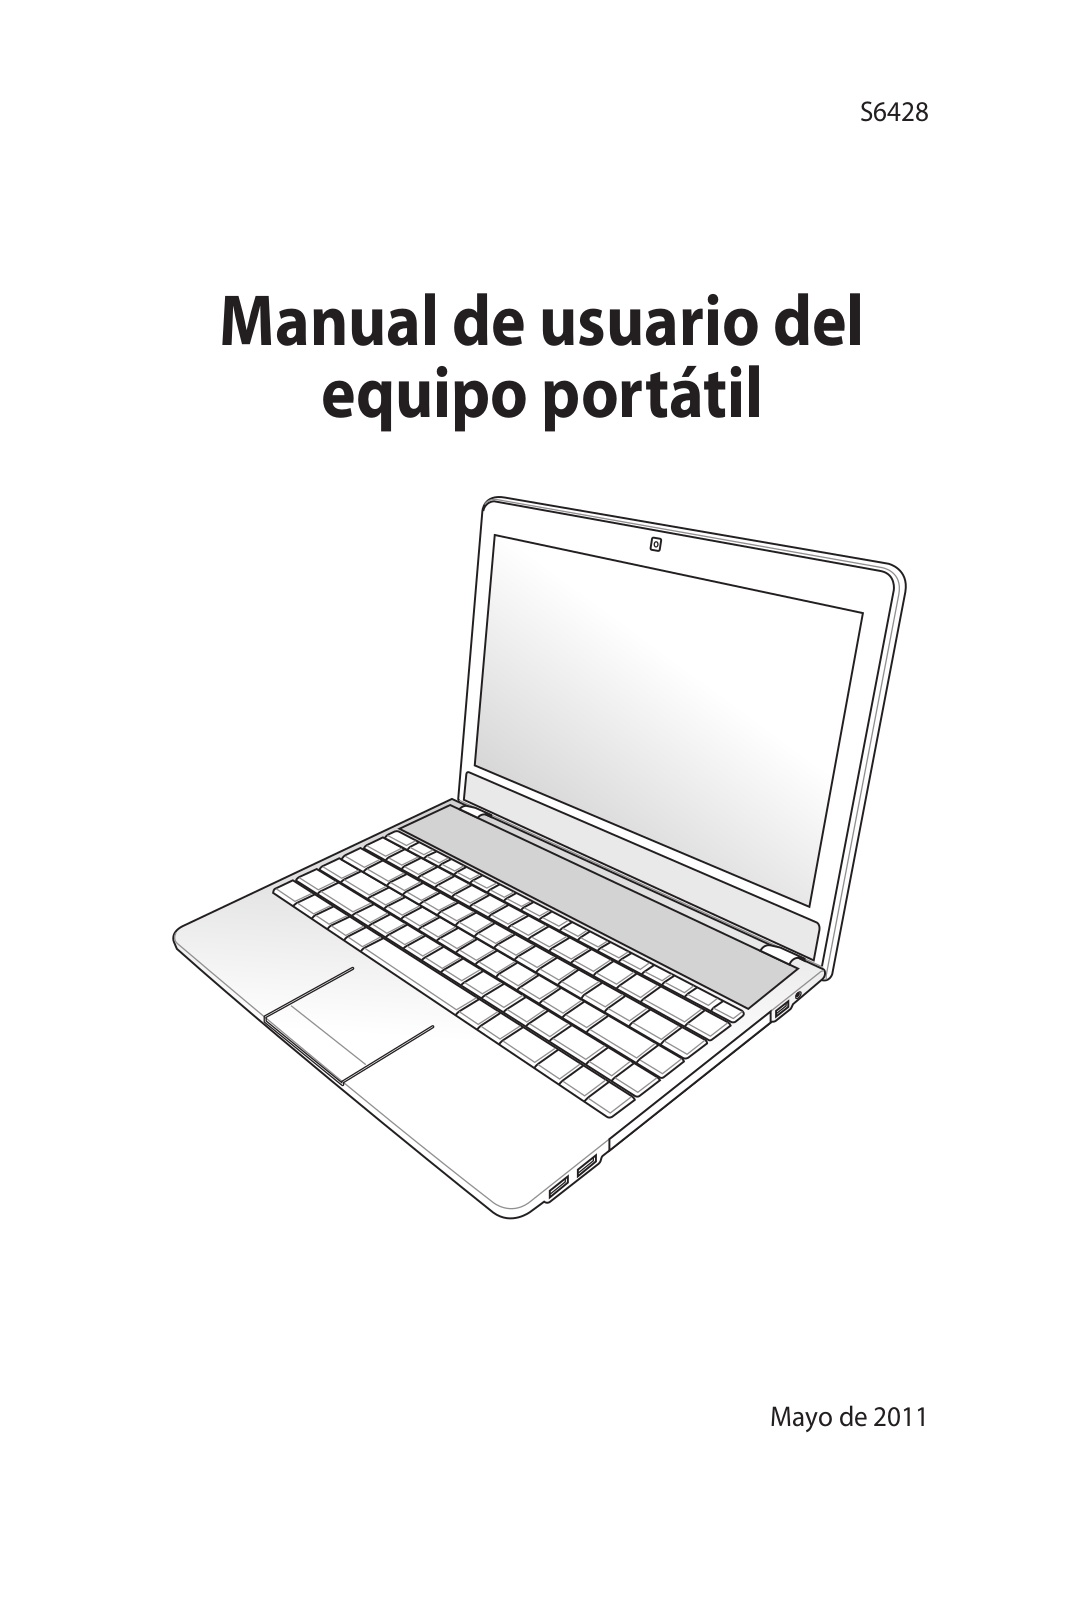 Asus S6428 Manual